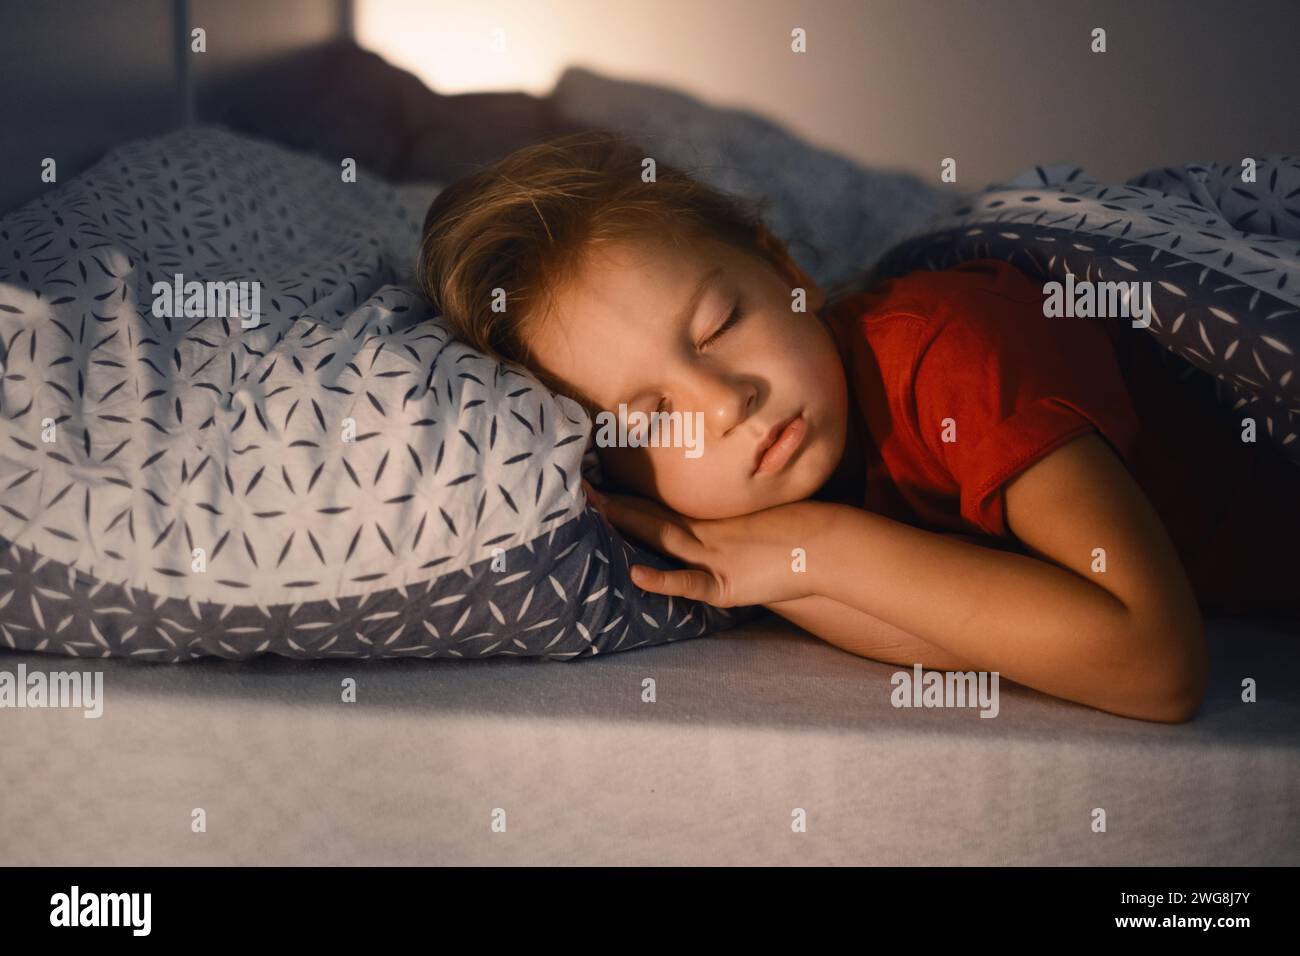 Enfant dormant la nuit. Lit confortable pour les enfants. Petite fille dormant serré, s'endormant rapidement, des habitudes saines et une literie confortable Banque D'Images